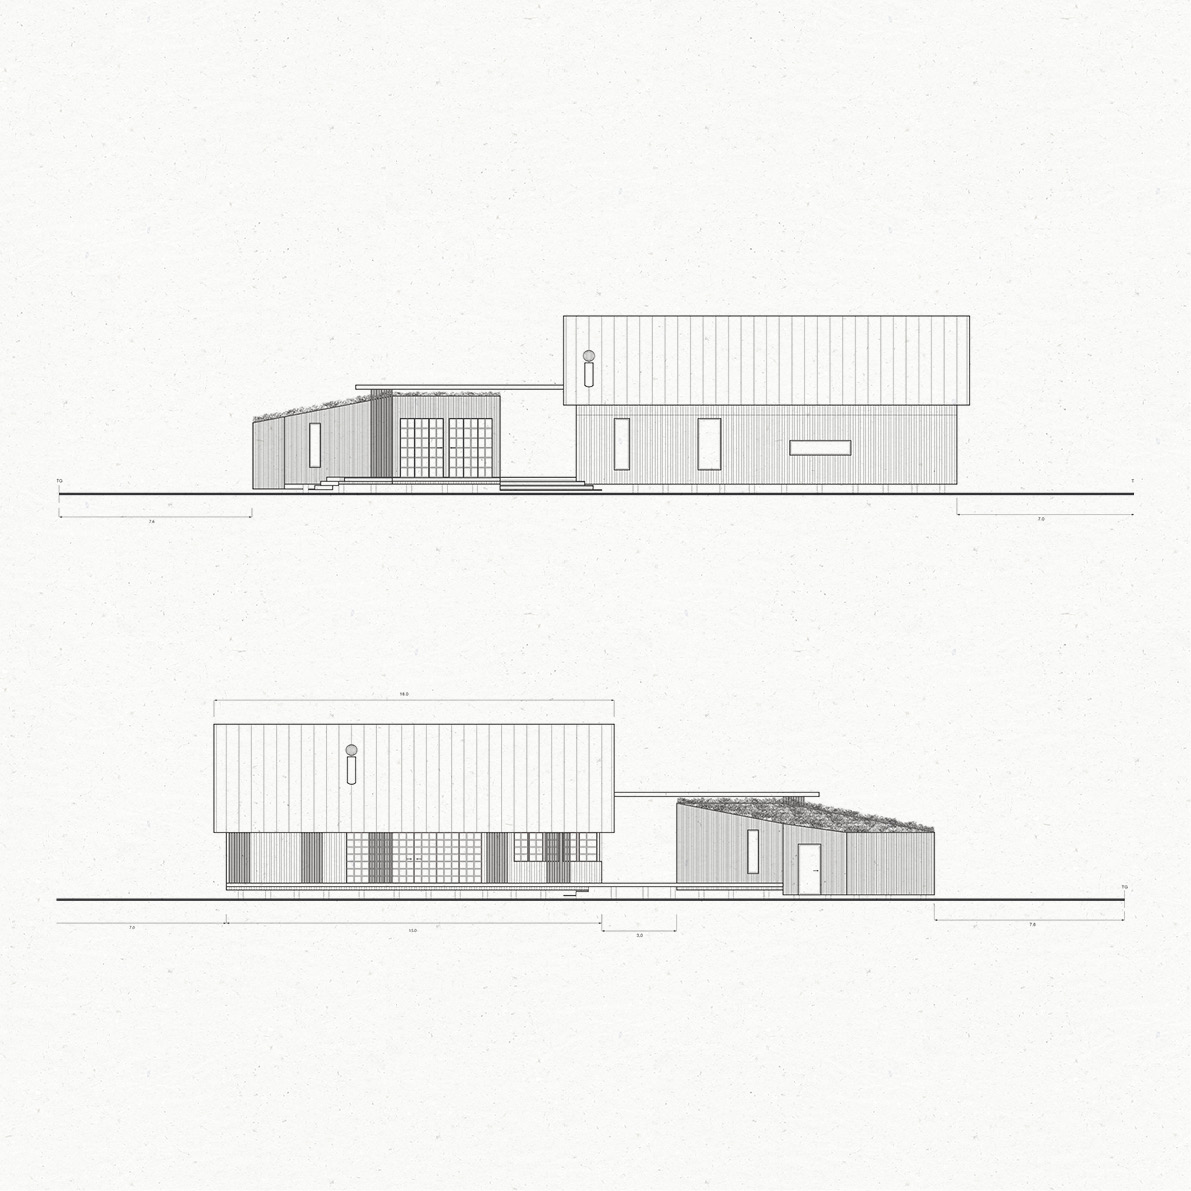 Ritning av villa, fasad mot sydöst och nordväst. Projekt Nordanstig av Kärnvirke Arkitektur.